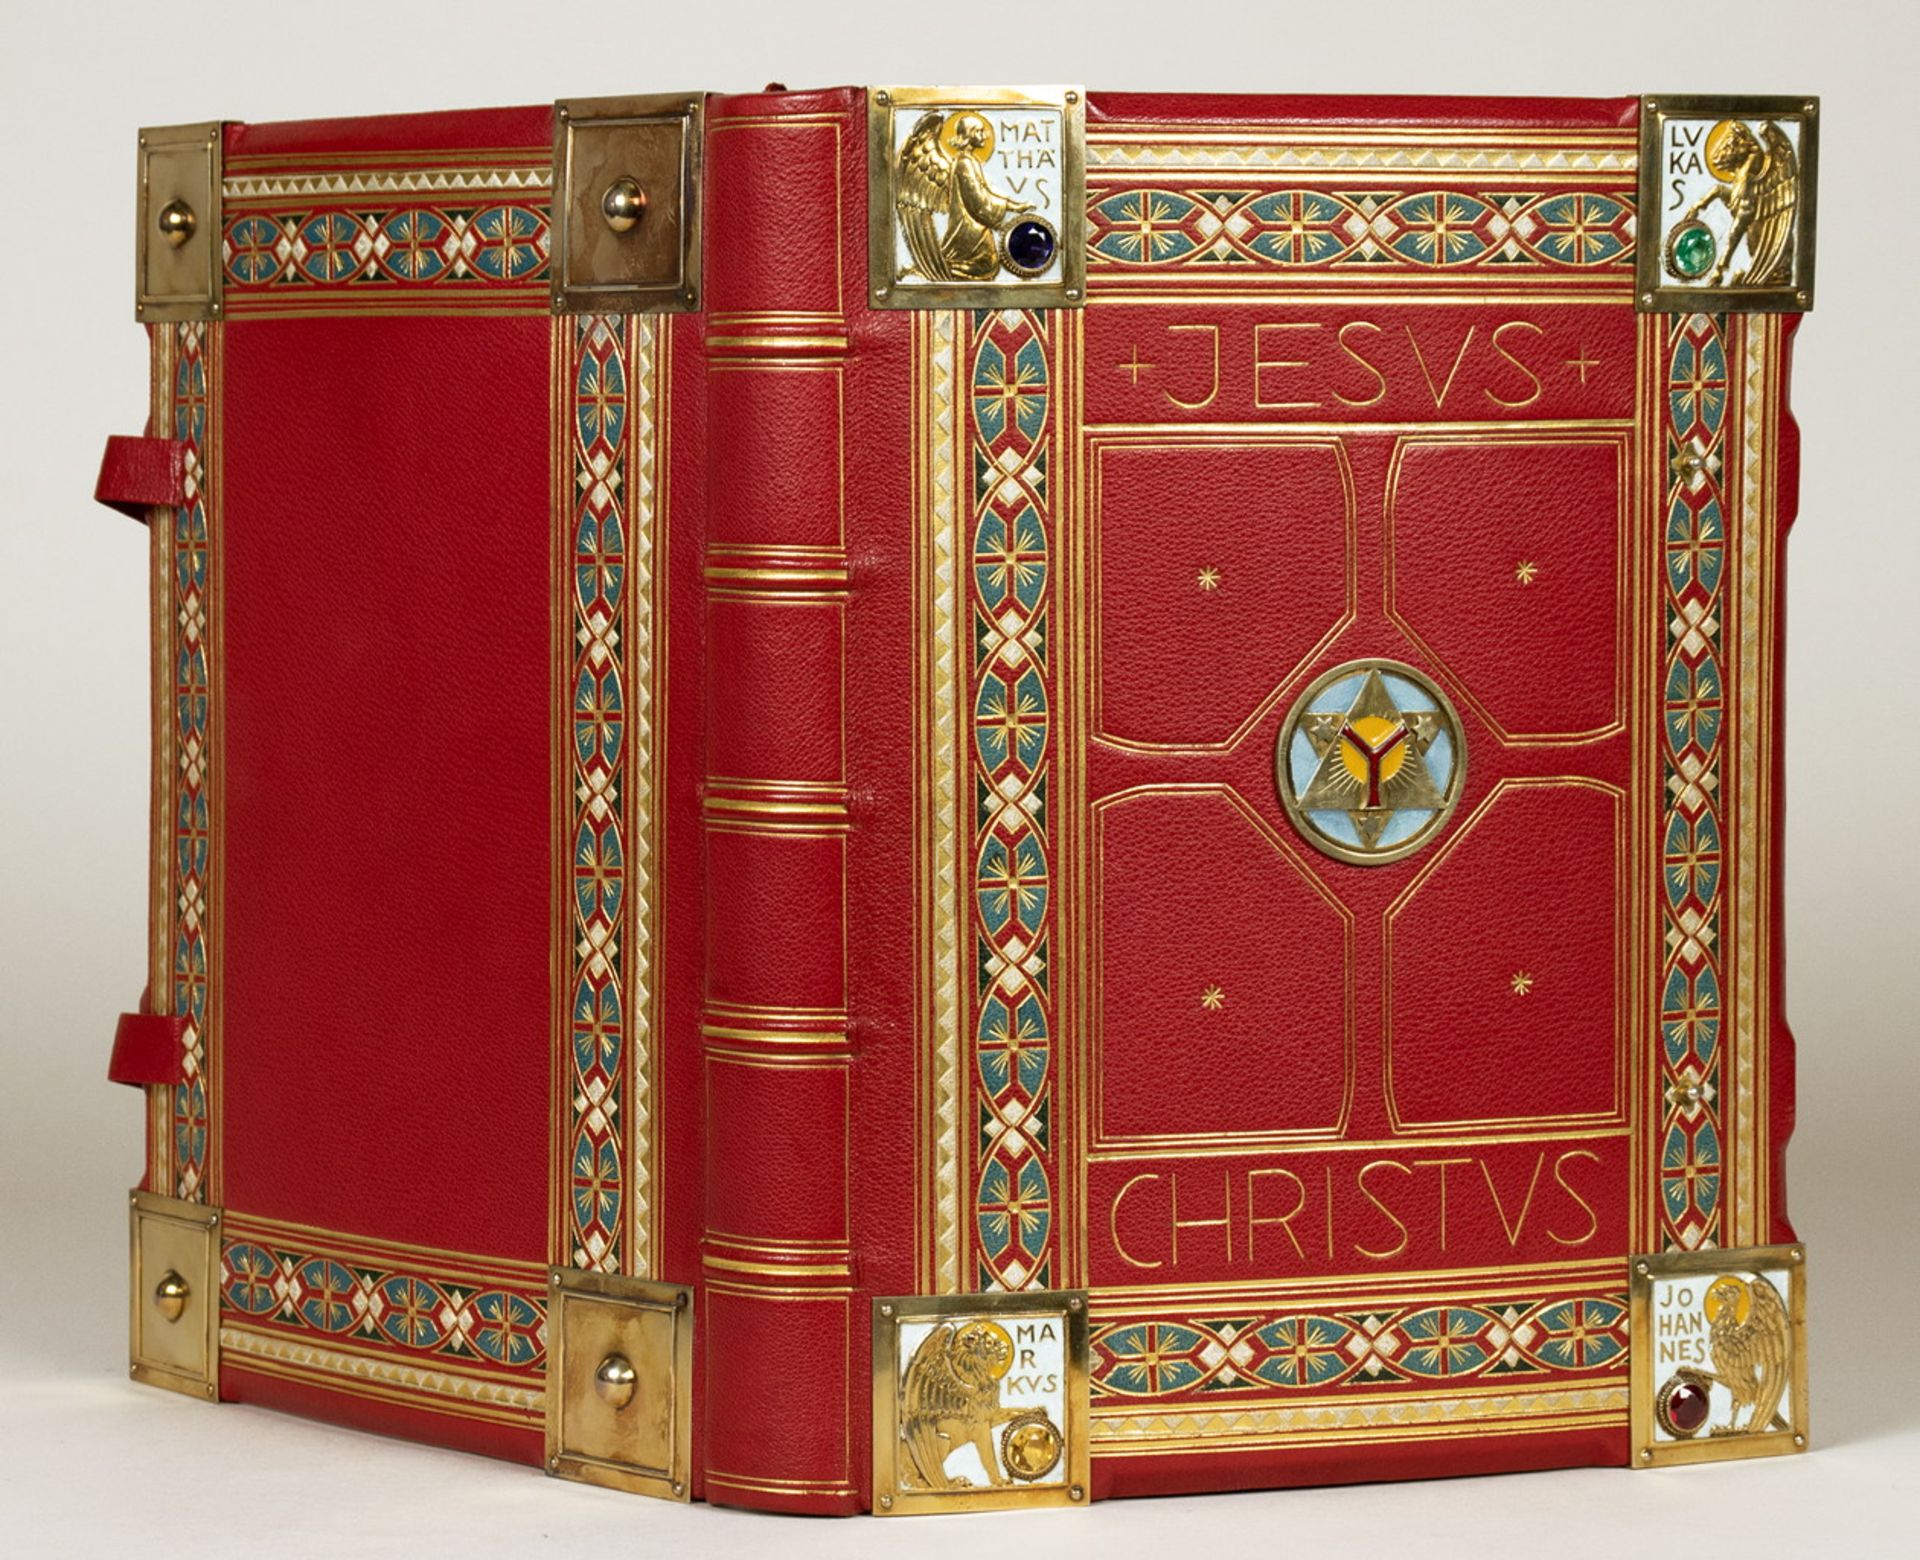 Handgeschriebene Bücher - Jesus Christus. Johann Holtz.